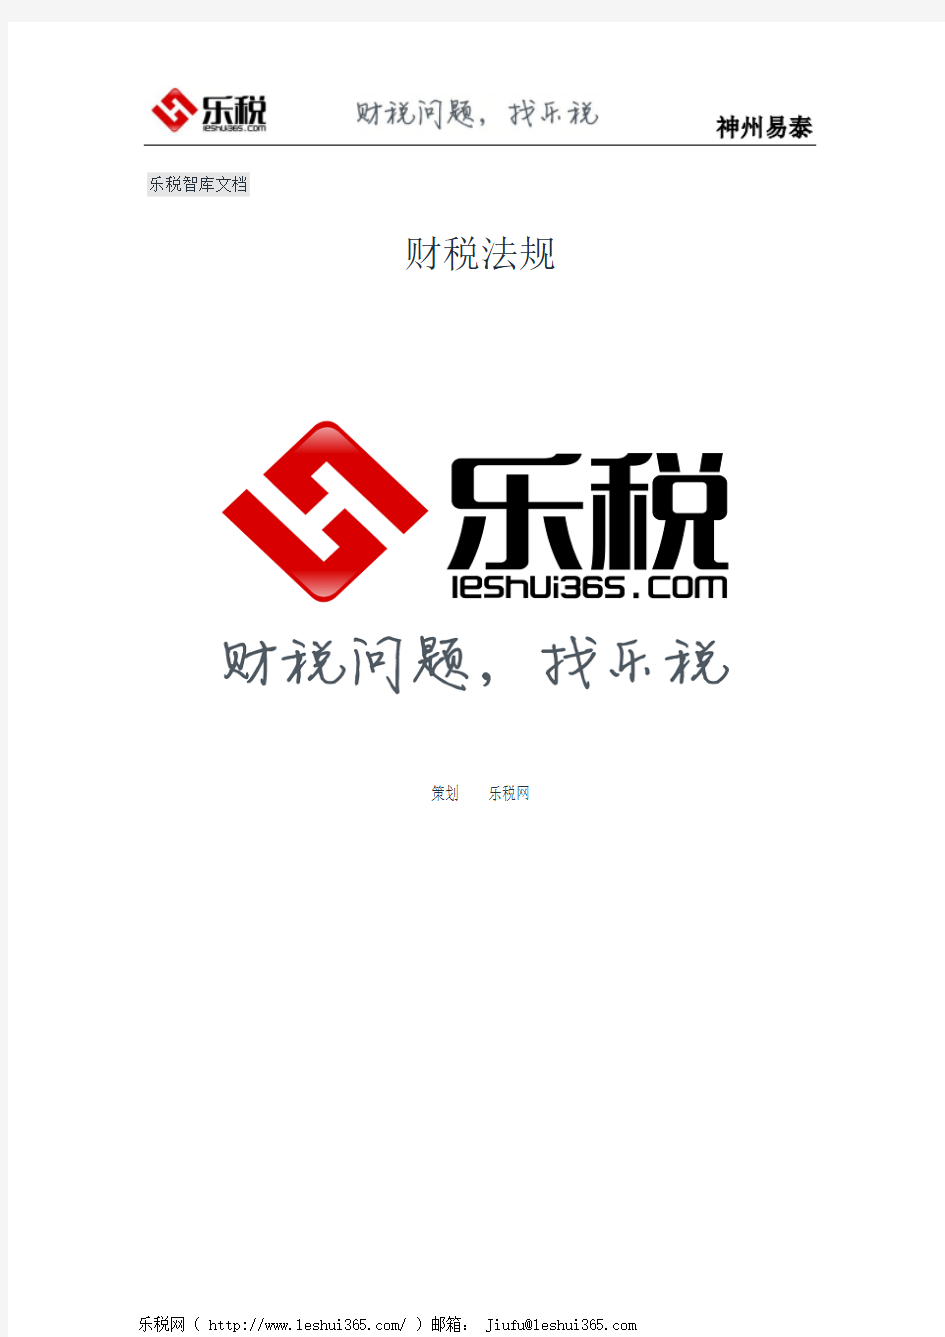 广西壮族自治区地方税务局关于公开征求《企业所得税核定征收管理